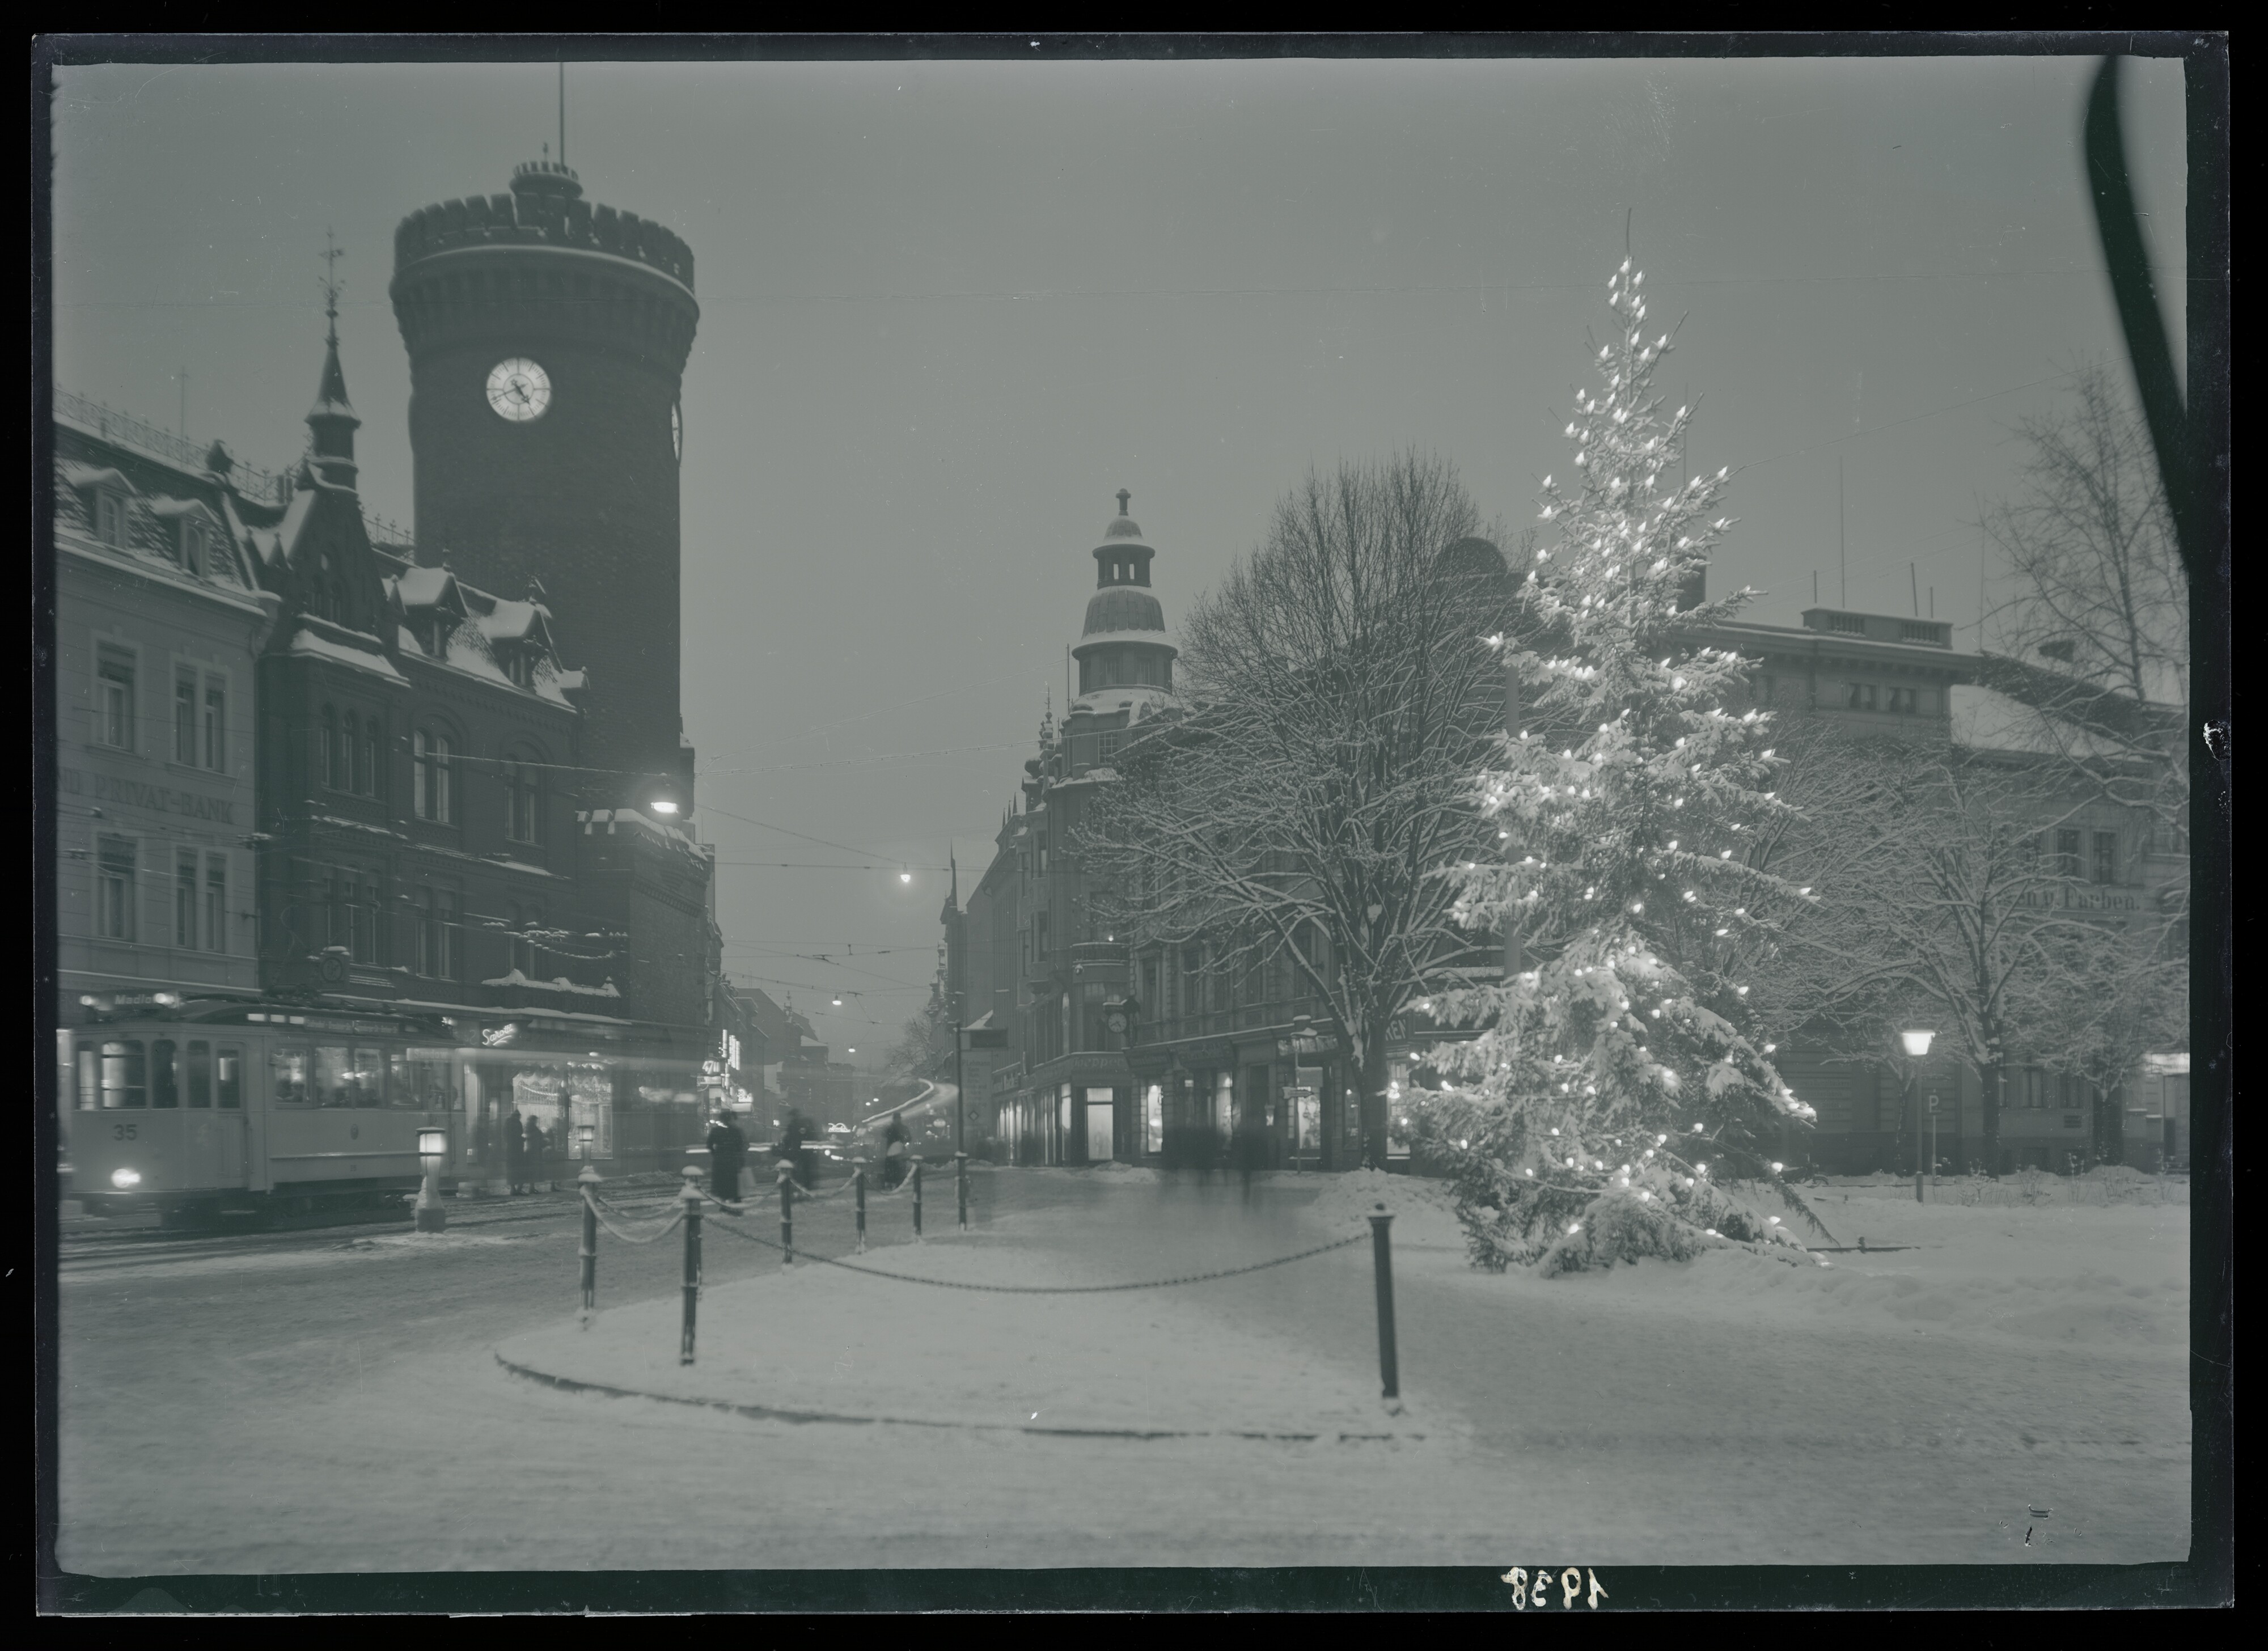 Spremberger Turm und Spremberger Straße, die "Einkaufsmeile" der Stadt Cottbus im Winter 1938 (Stadtmuseum Cottbus CC BY-NC-SA)